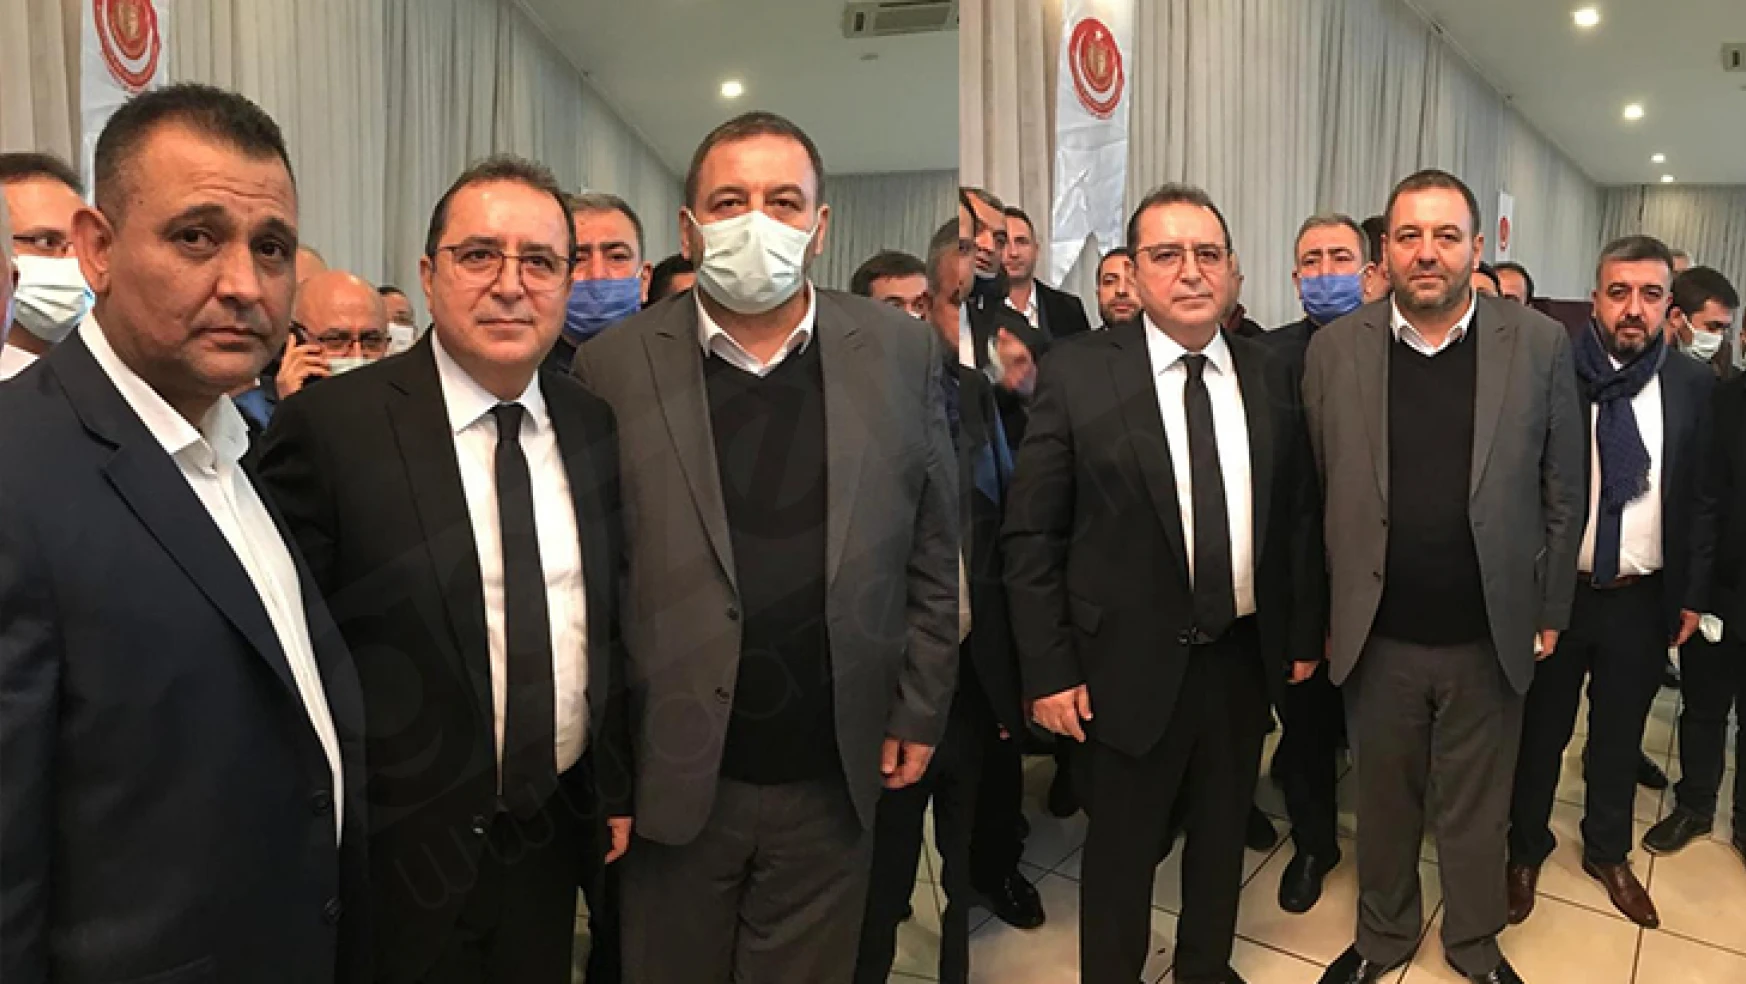 Kahramanmaraş Kuyumcular Odası Başkanı Hacı Mustafa Öz, güven tazeledi